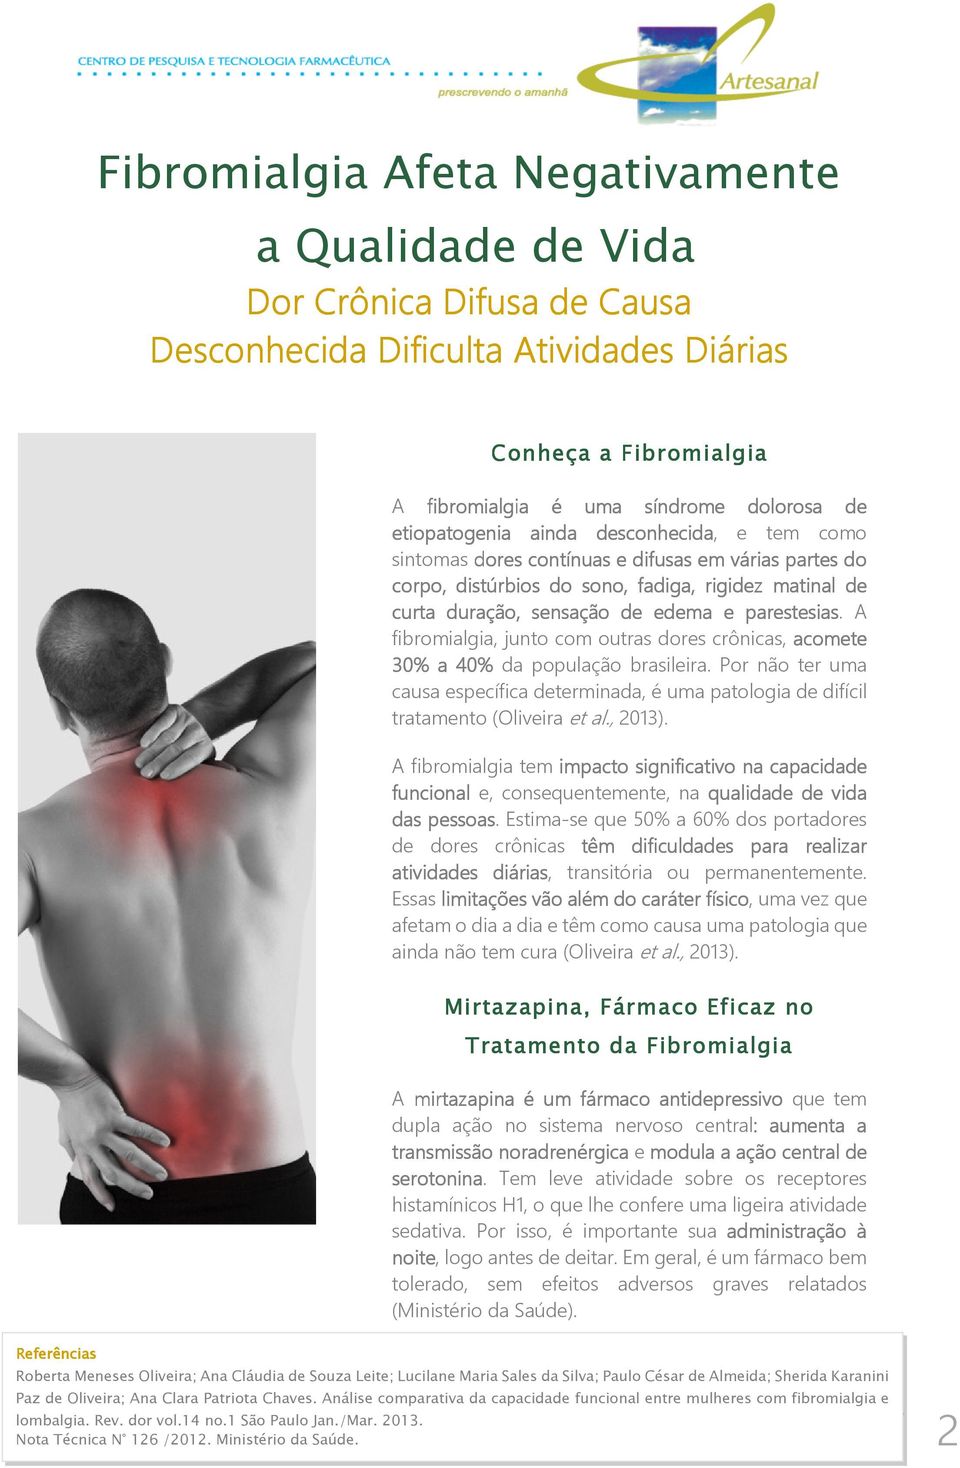 parestesias. A fibromialgia, junto com outras dores crônicas, acomete 30% a 40% da população brasileira.